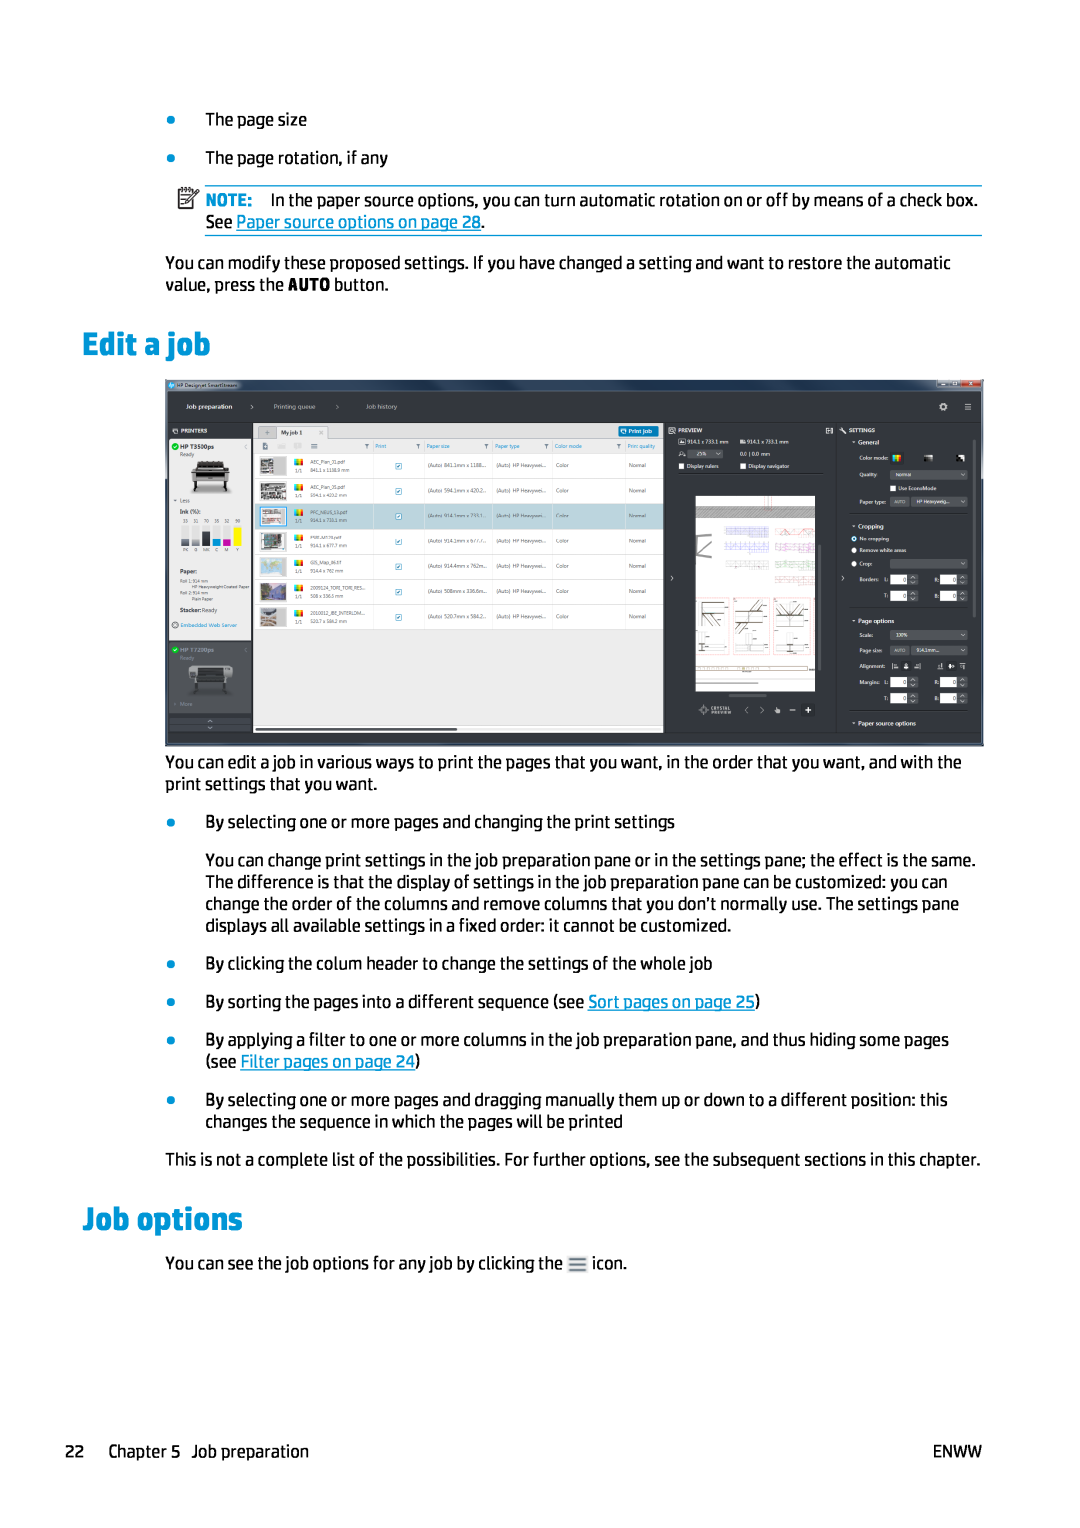 HP SmartStream Software for s manual Edit a job, Job options 